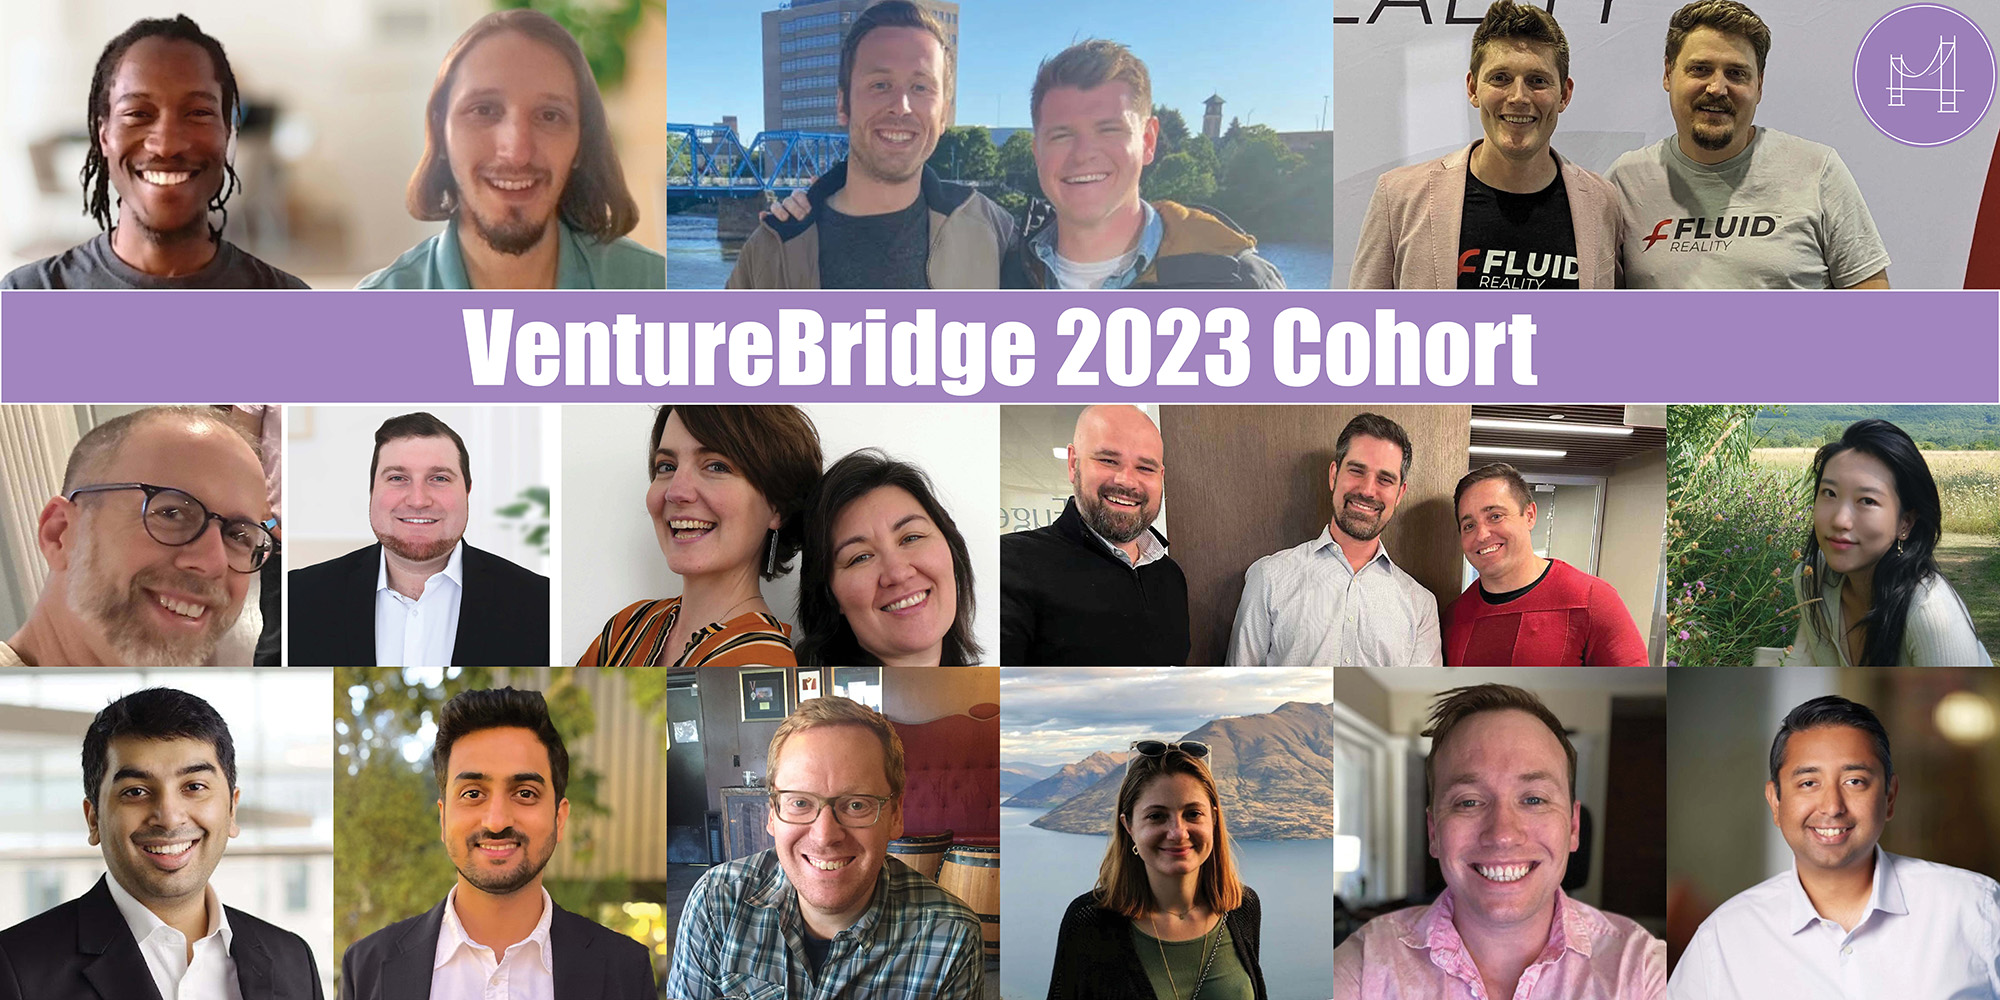 venturebridge-2023-top-banner.jpg